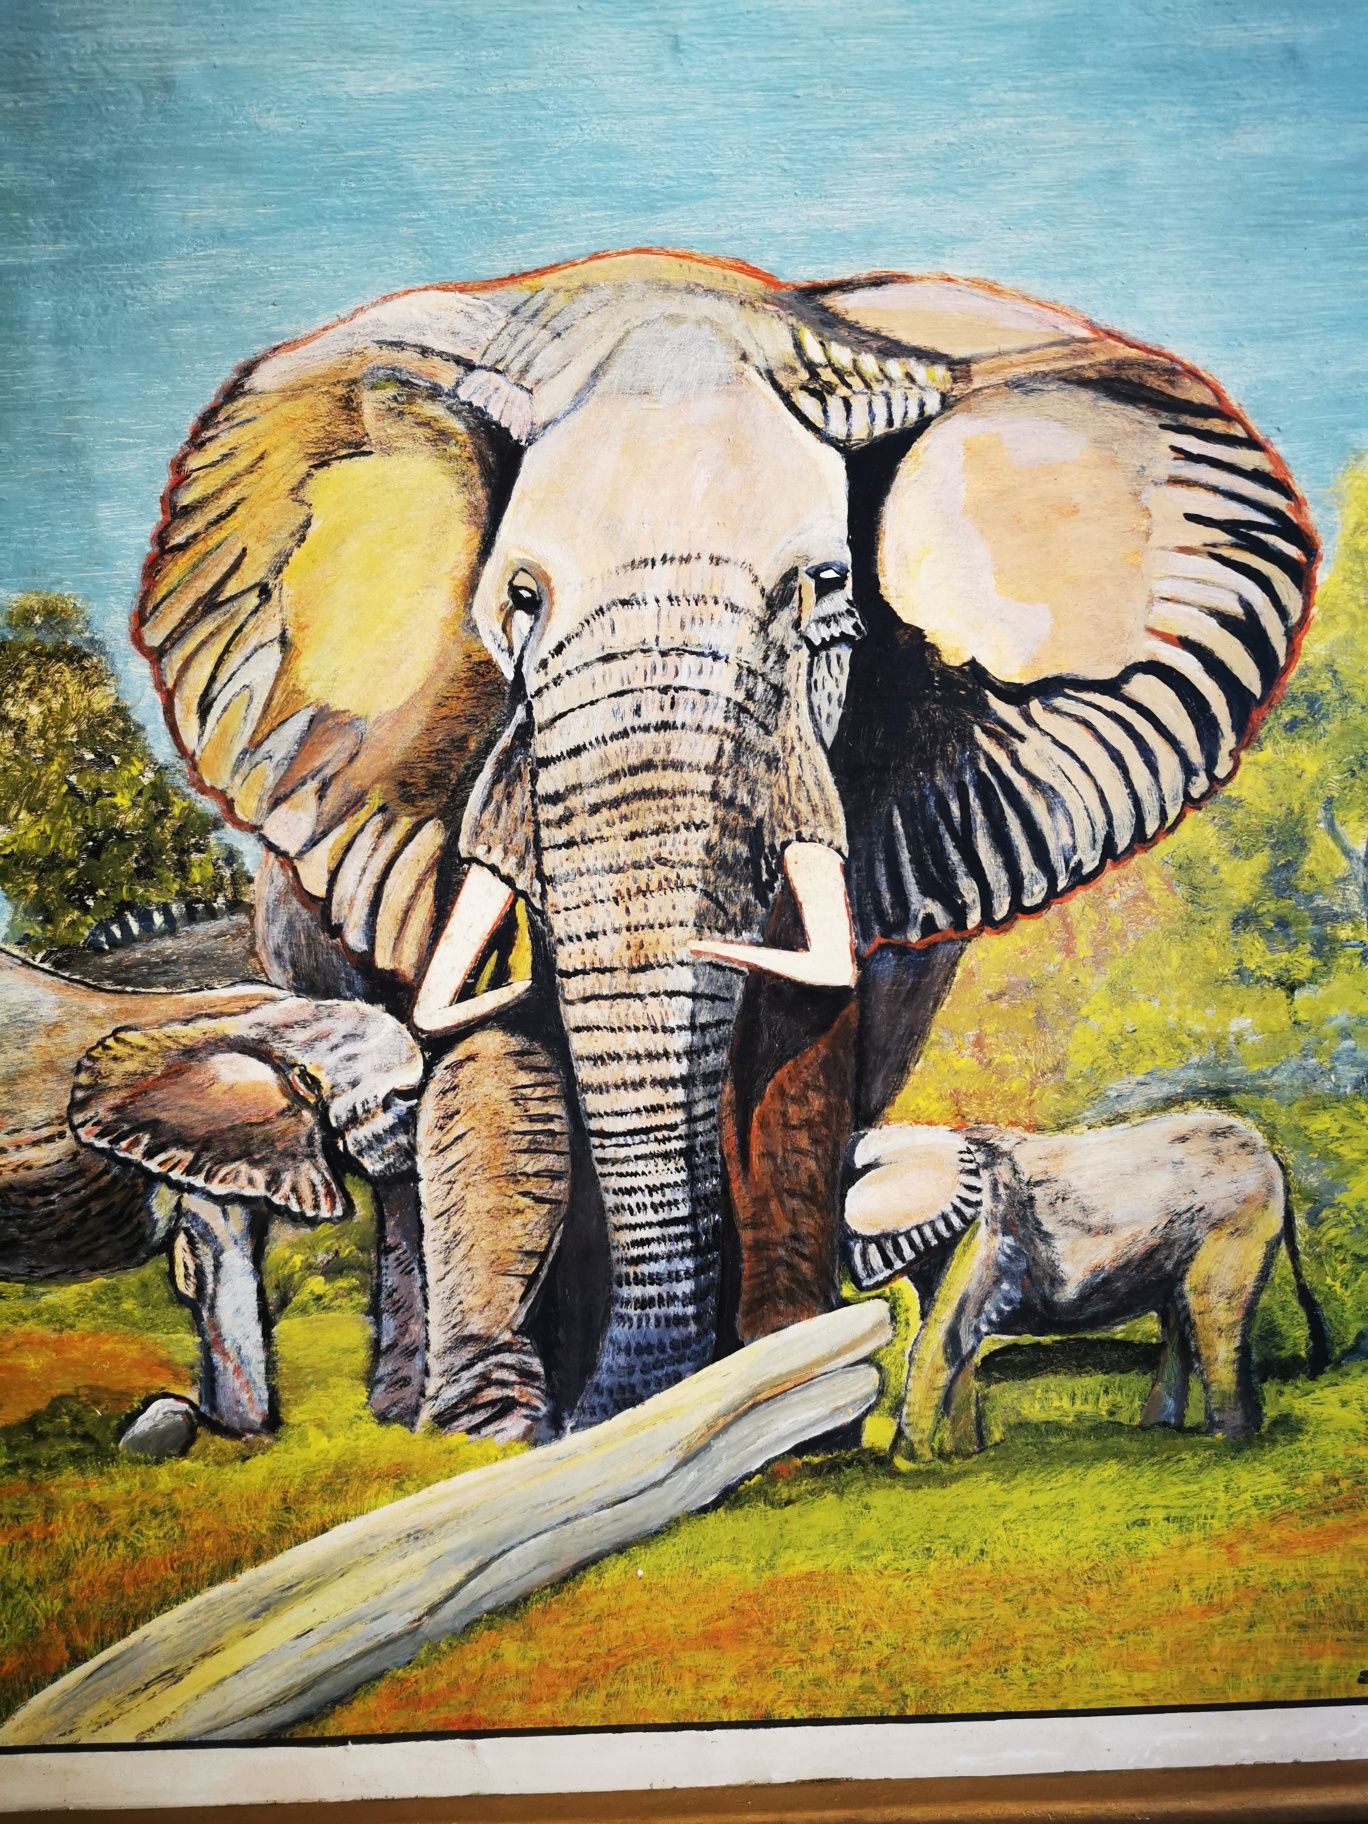 Quadro original com elefantes 1